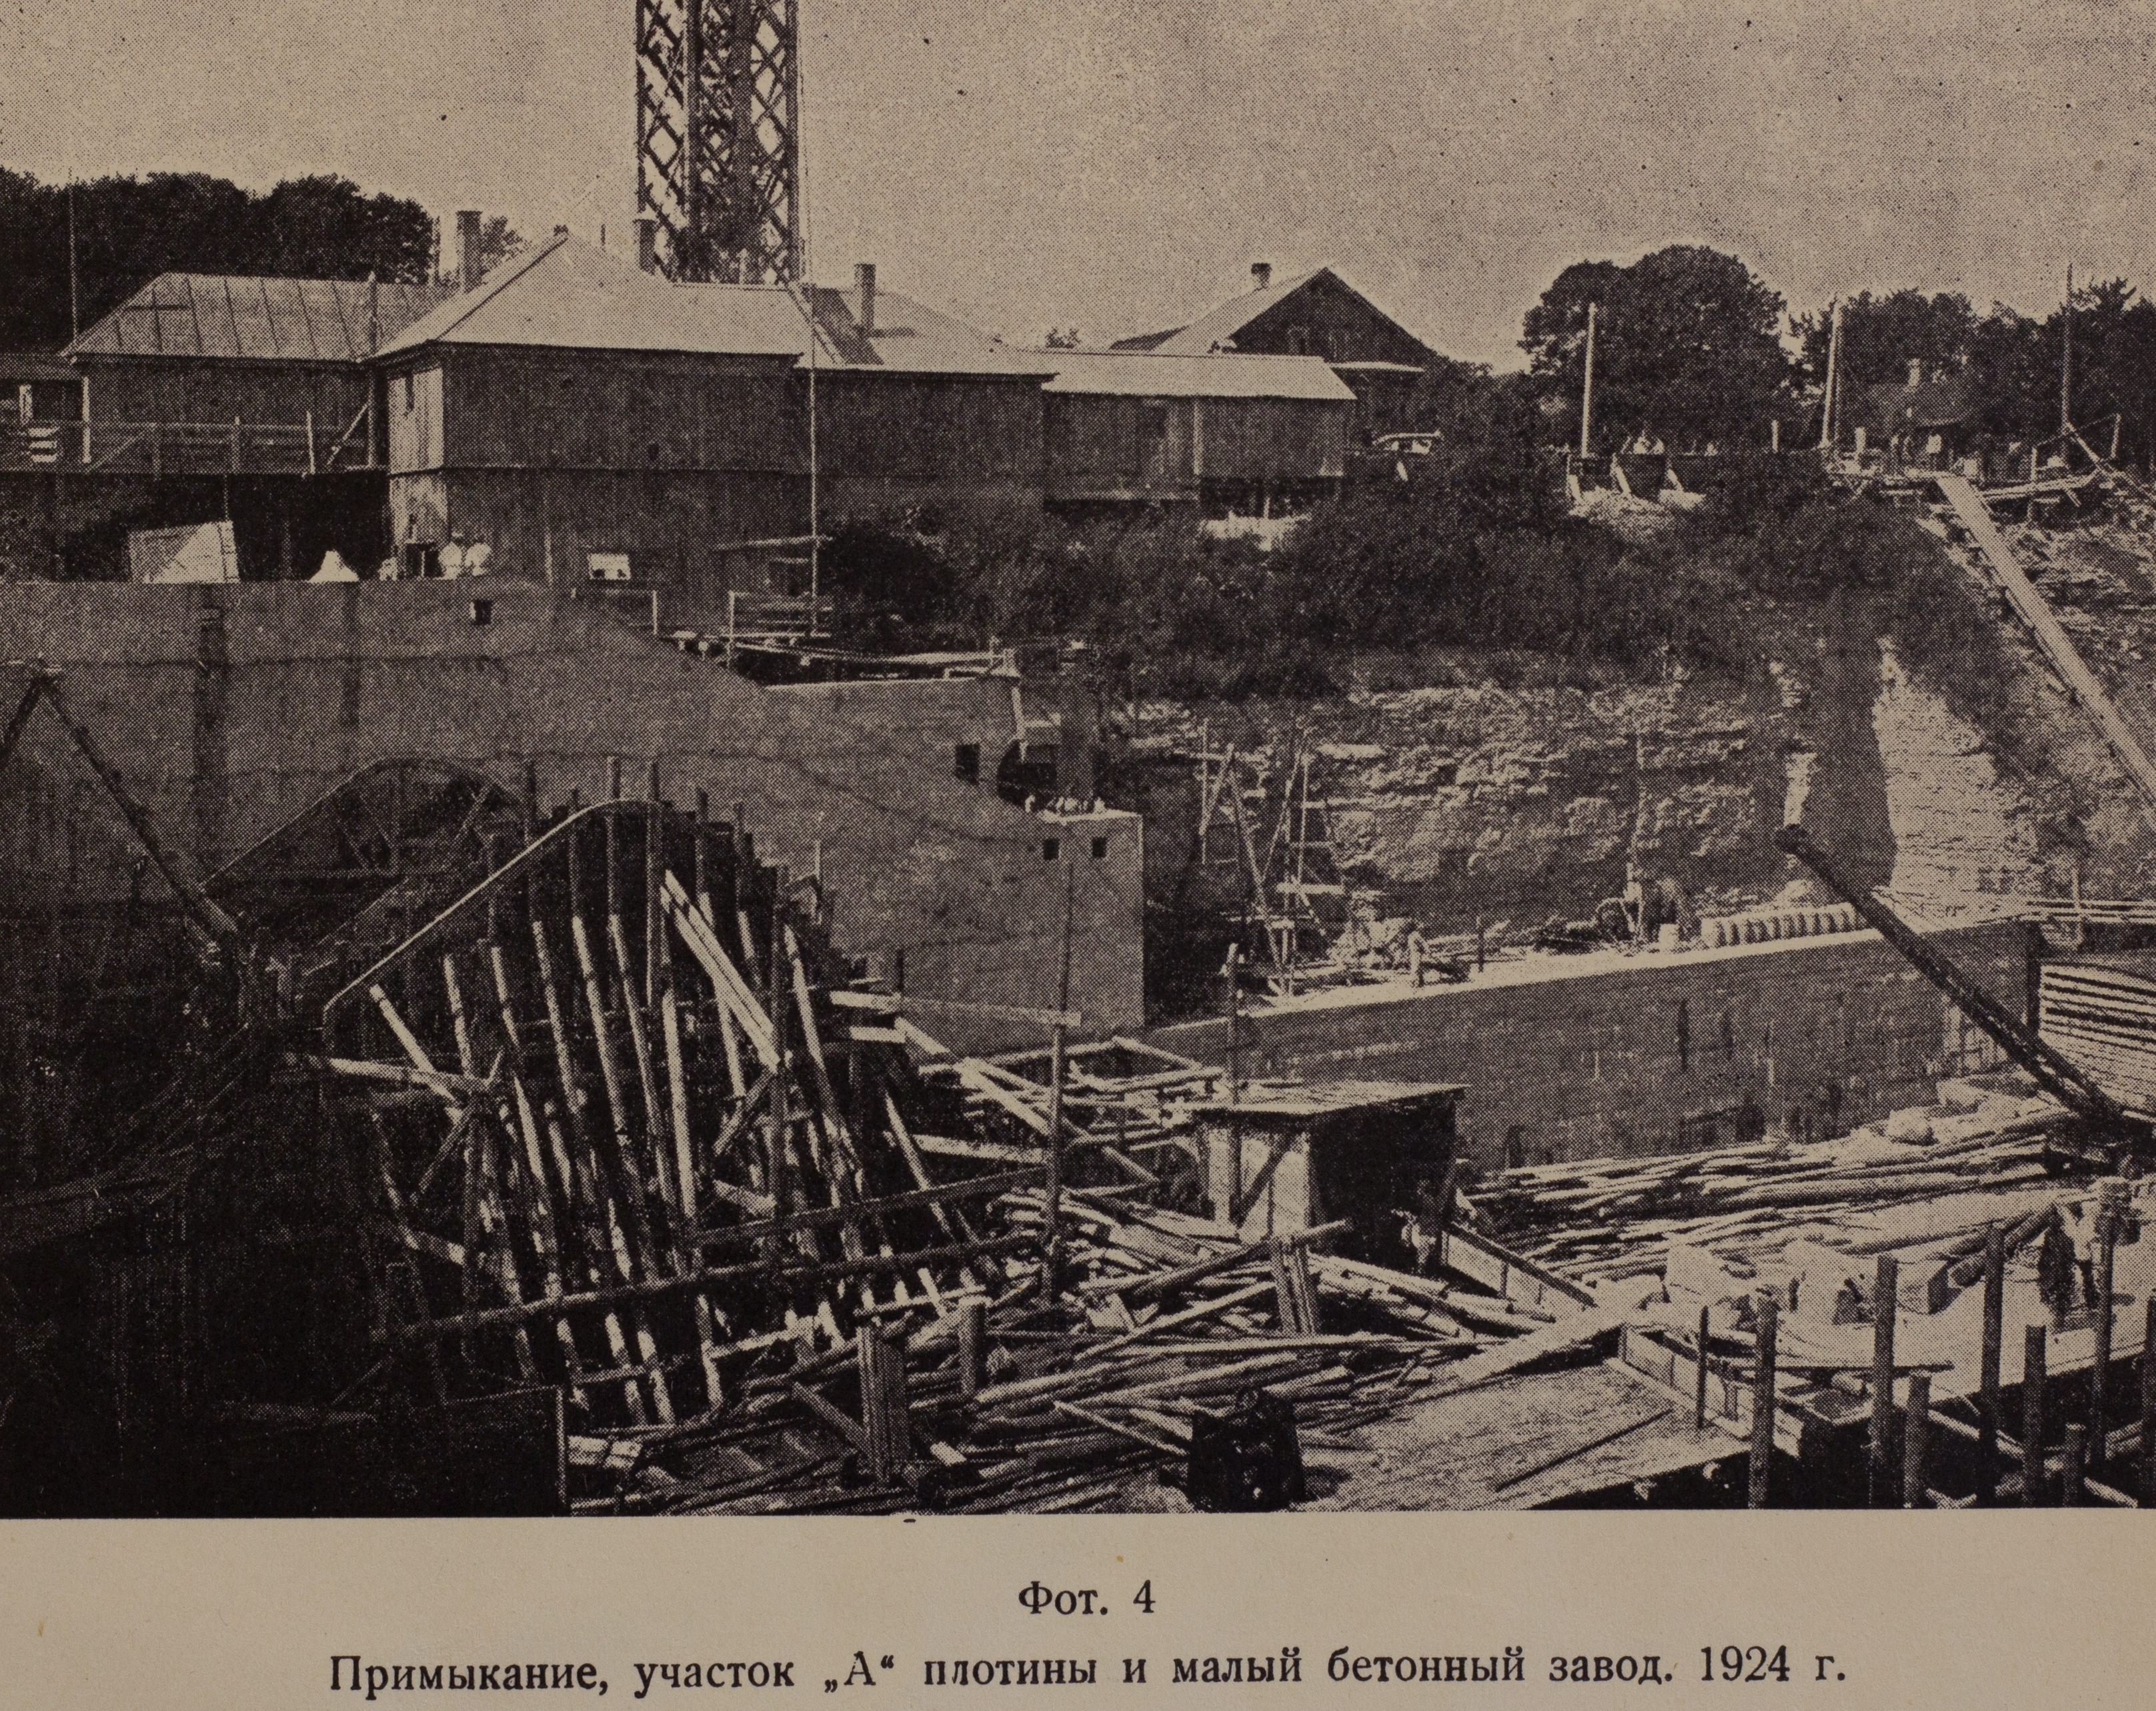 Примыкание, участок «А» плотины и малый бетонный завод (1924 г.)